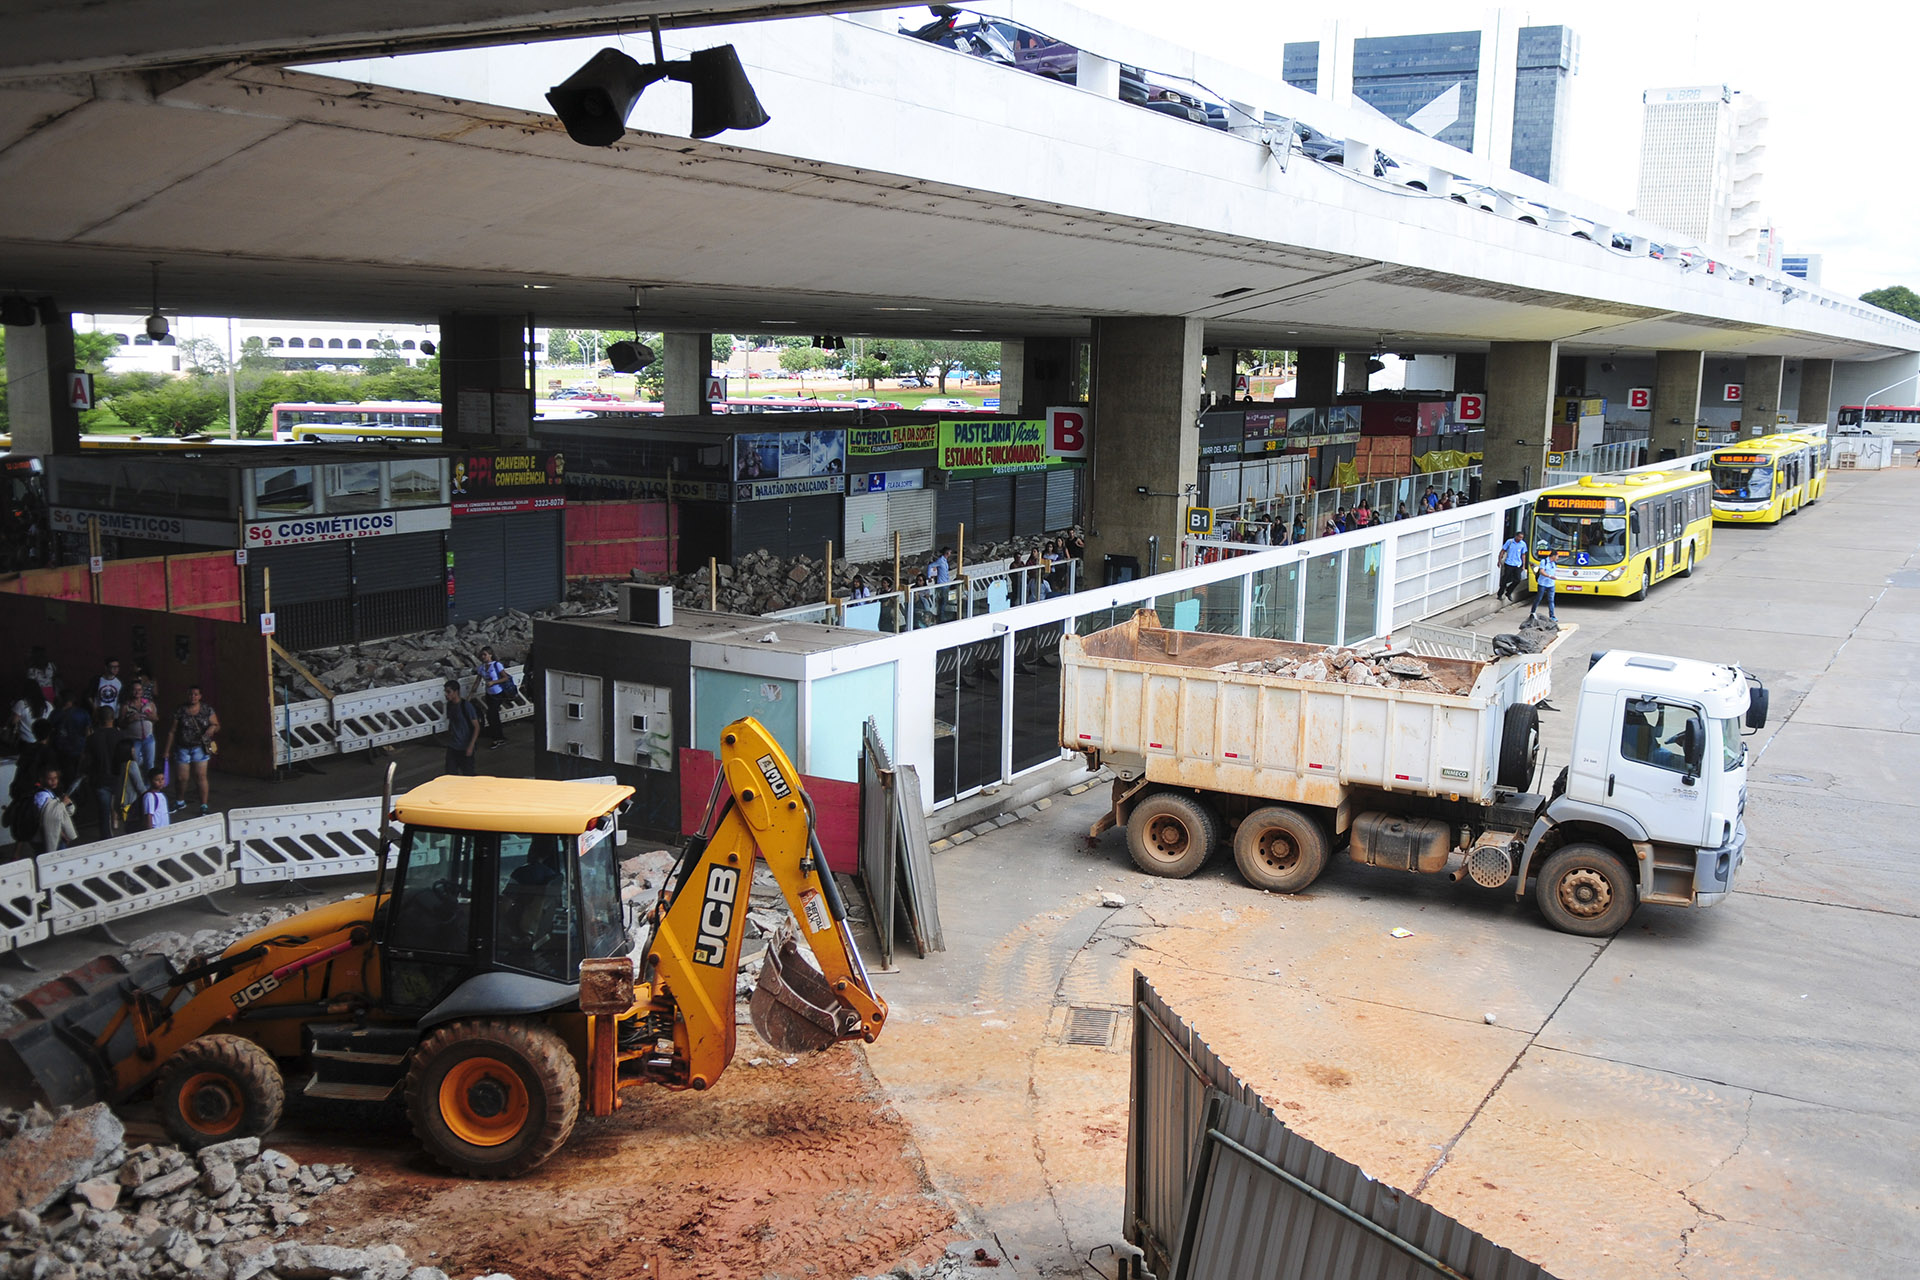 Passageiros do BRT devem embarcar na Plataforma F da Rodoviária do Plano Piloto durante o período de obras. Foto: Dênio Simões/Agência Brasília